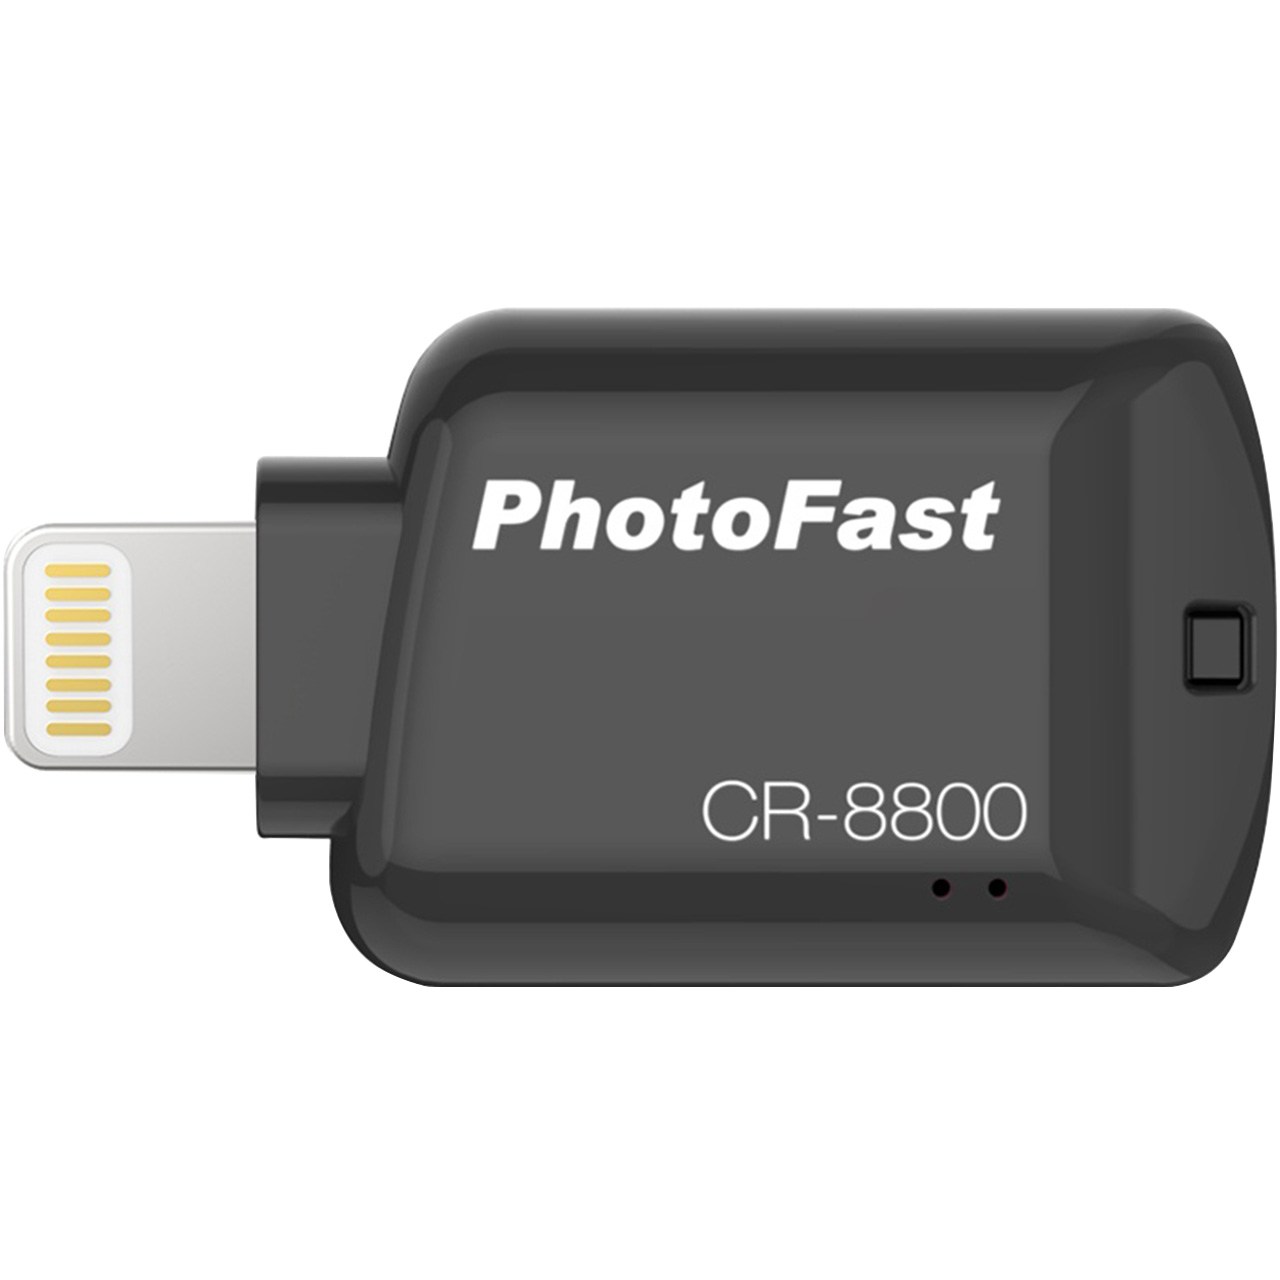 کارت خوان فوتو فست مدل CR-8800 مناسب برای سیستم عامل iOS